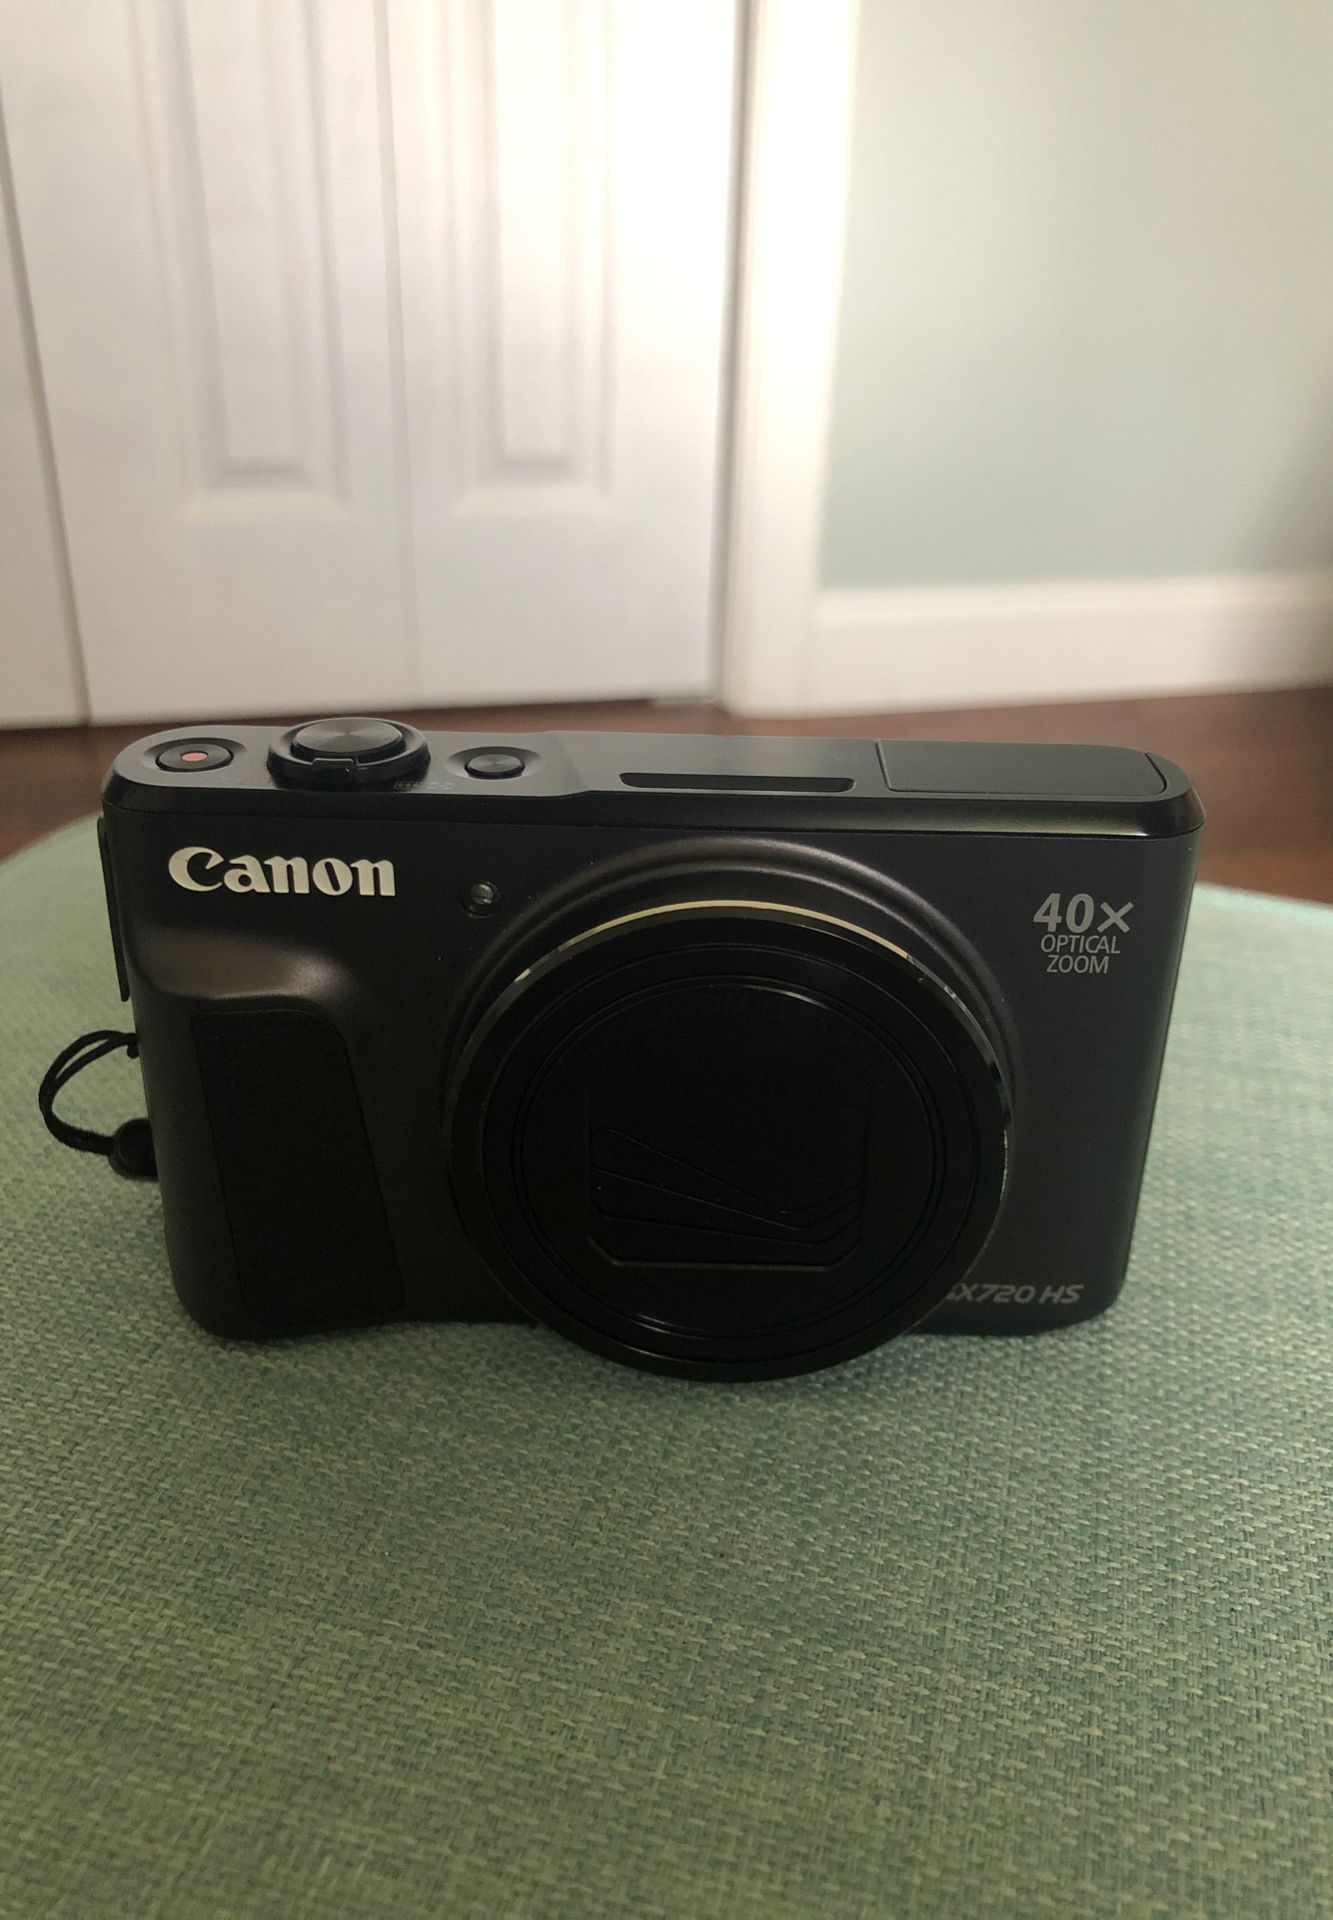 Canon digital camera